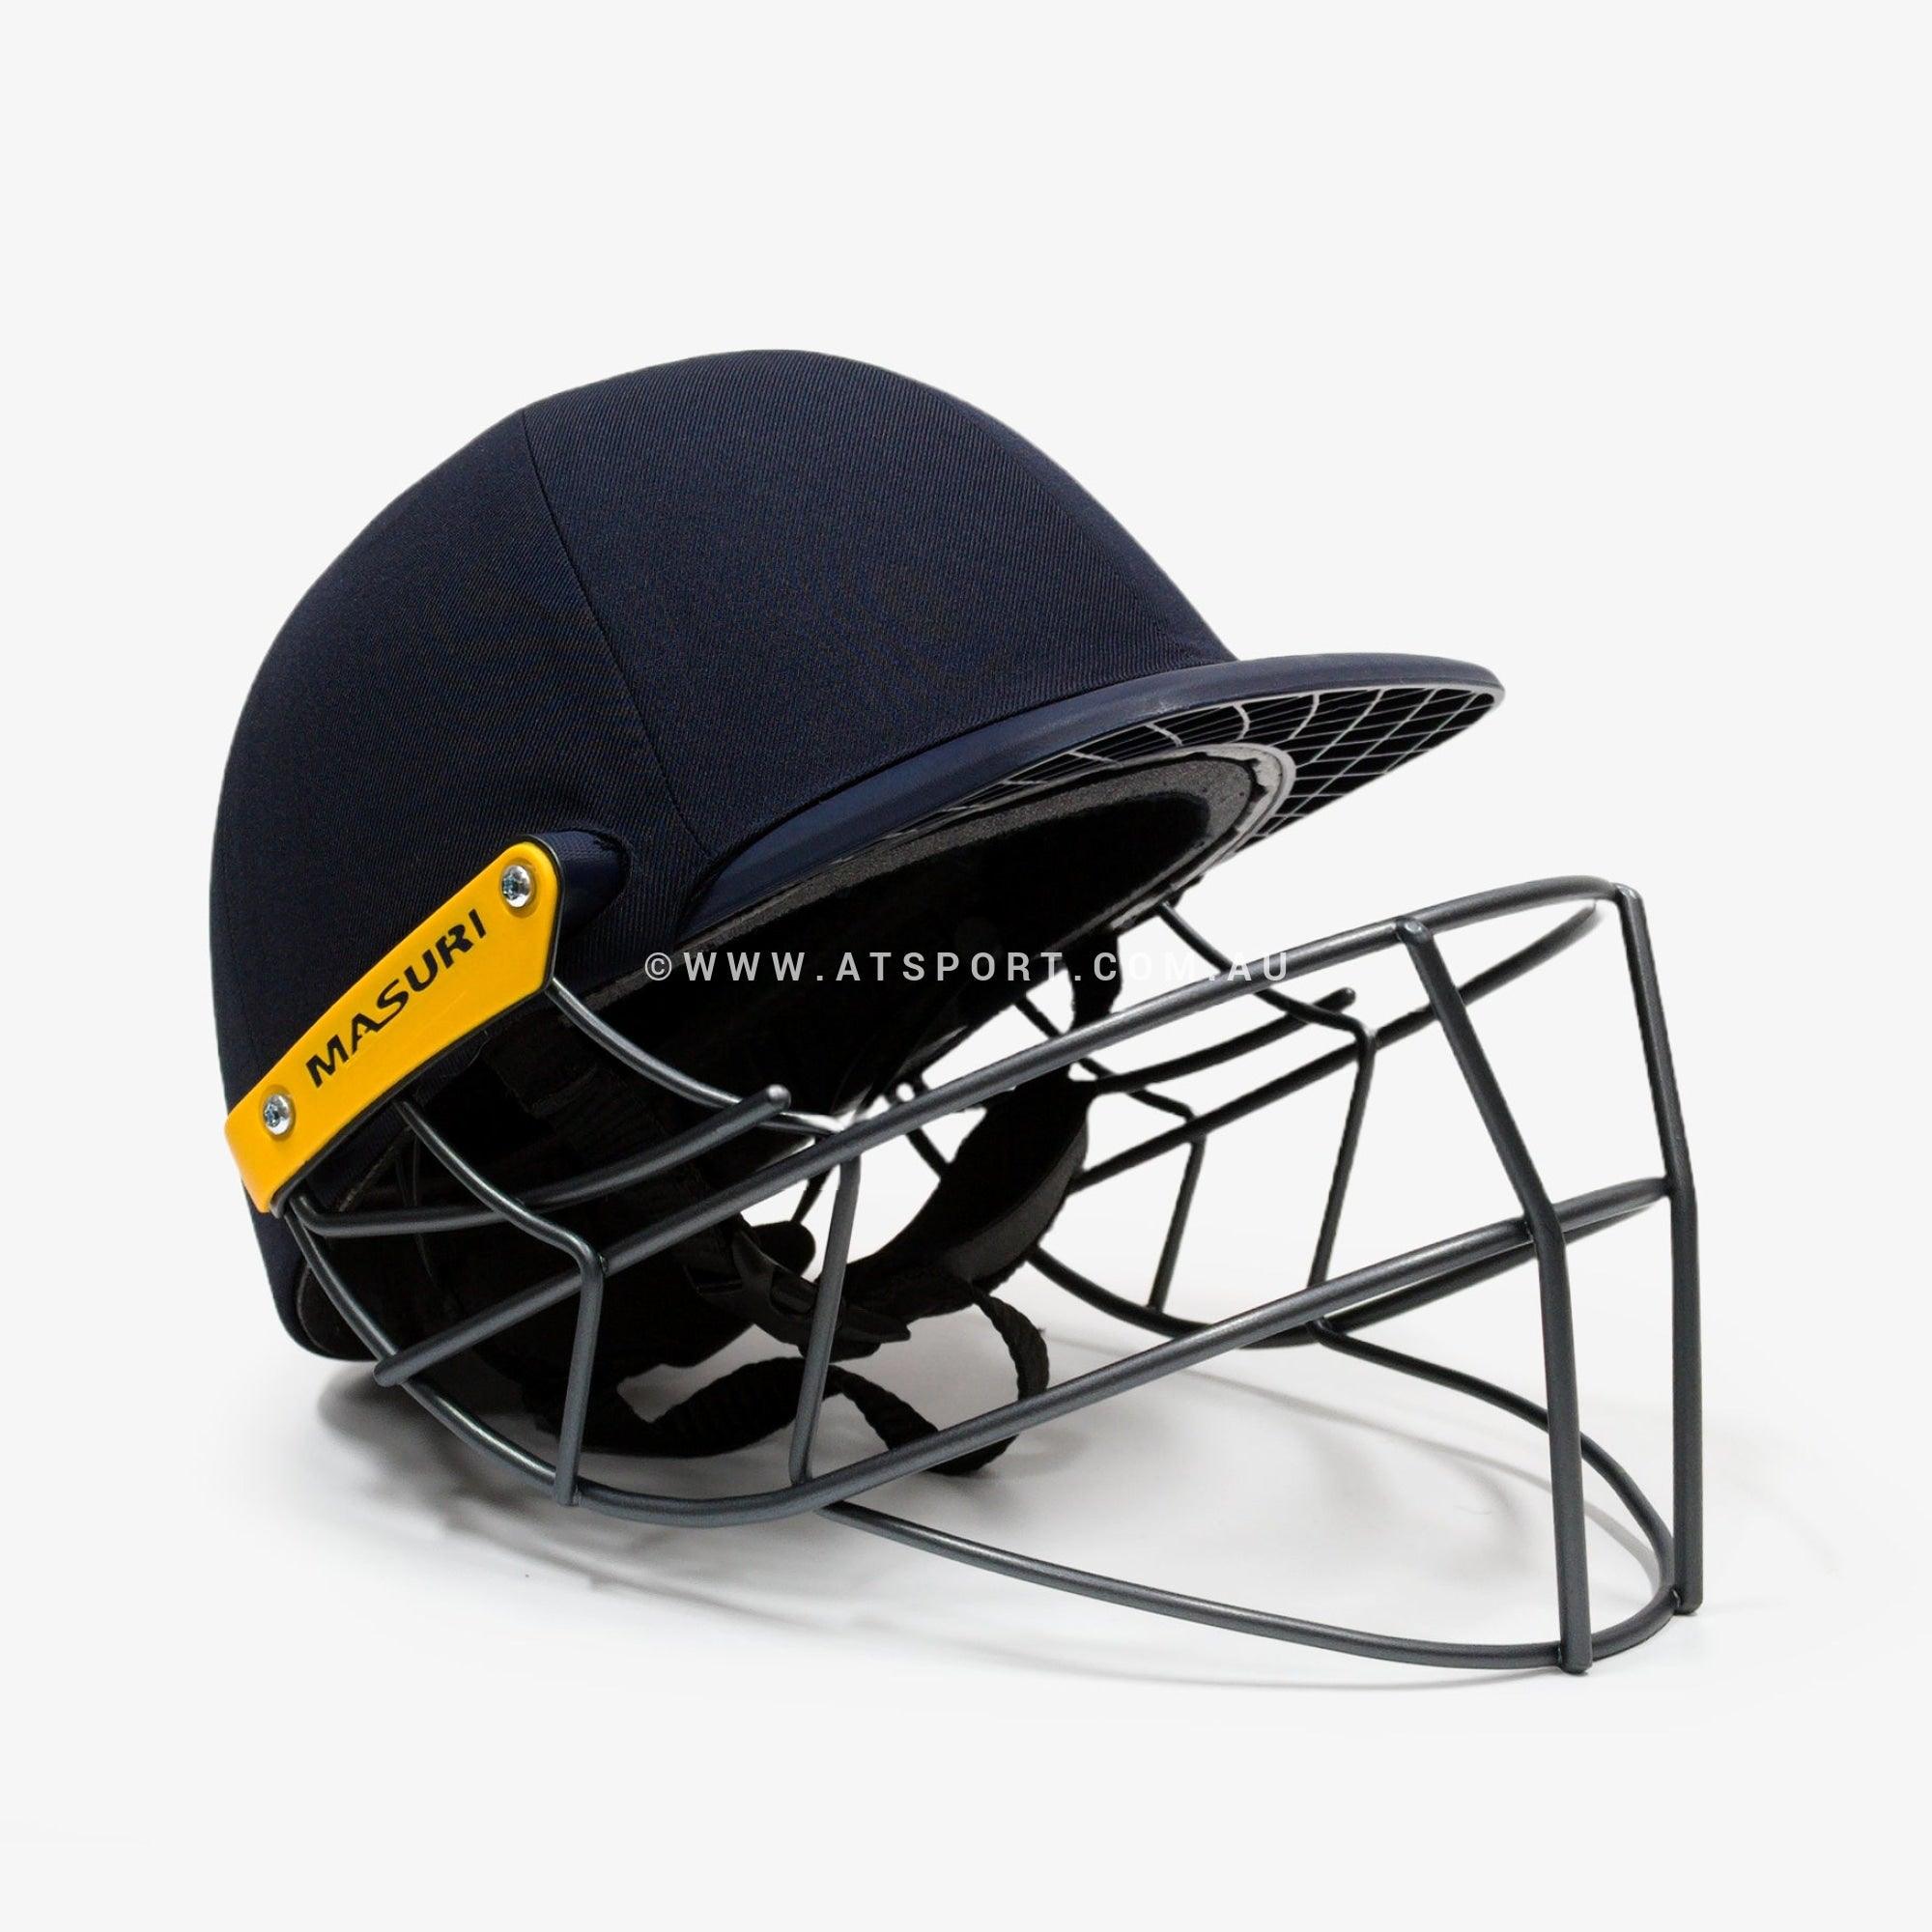 Masuri C LINE Plus STEEL Grille Cricket Helmet - AT Sports